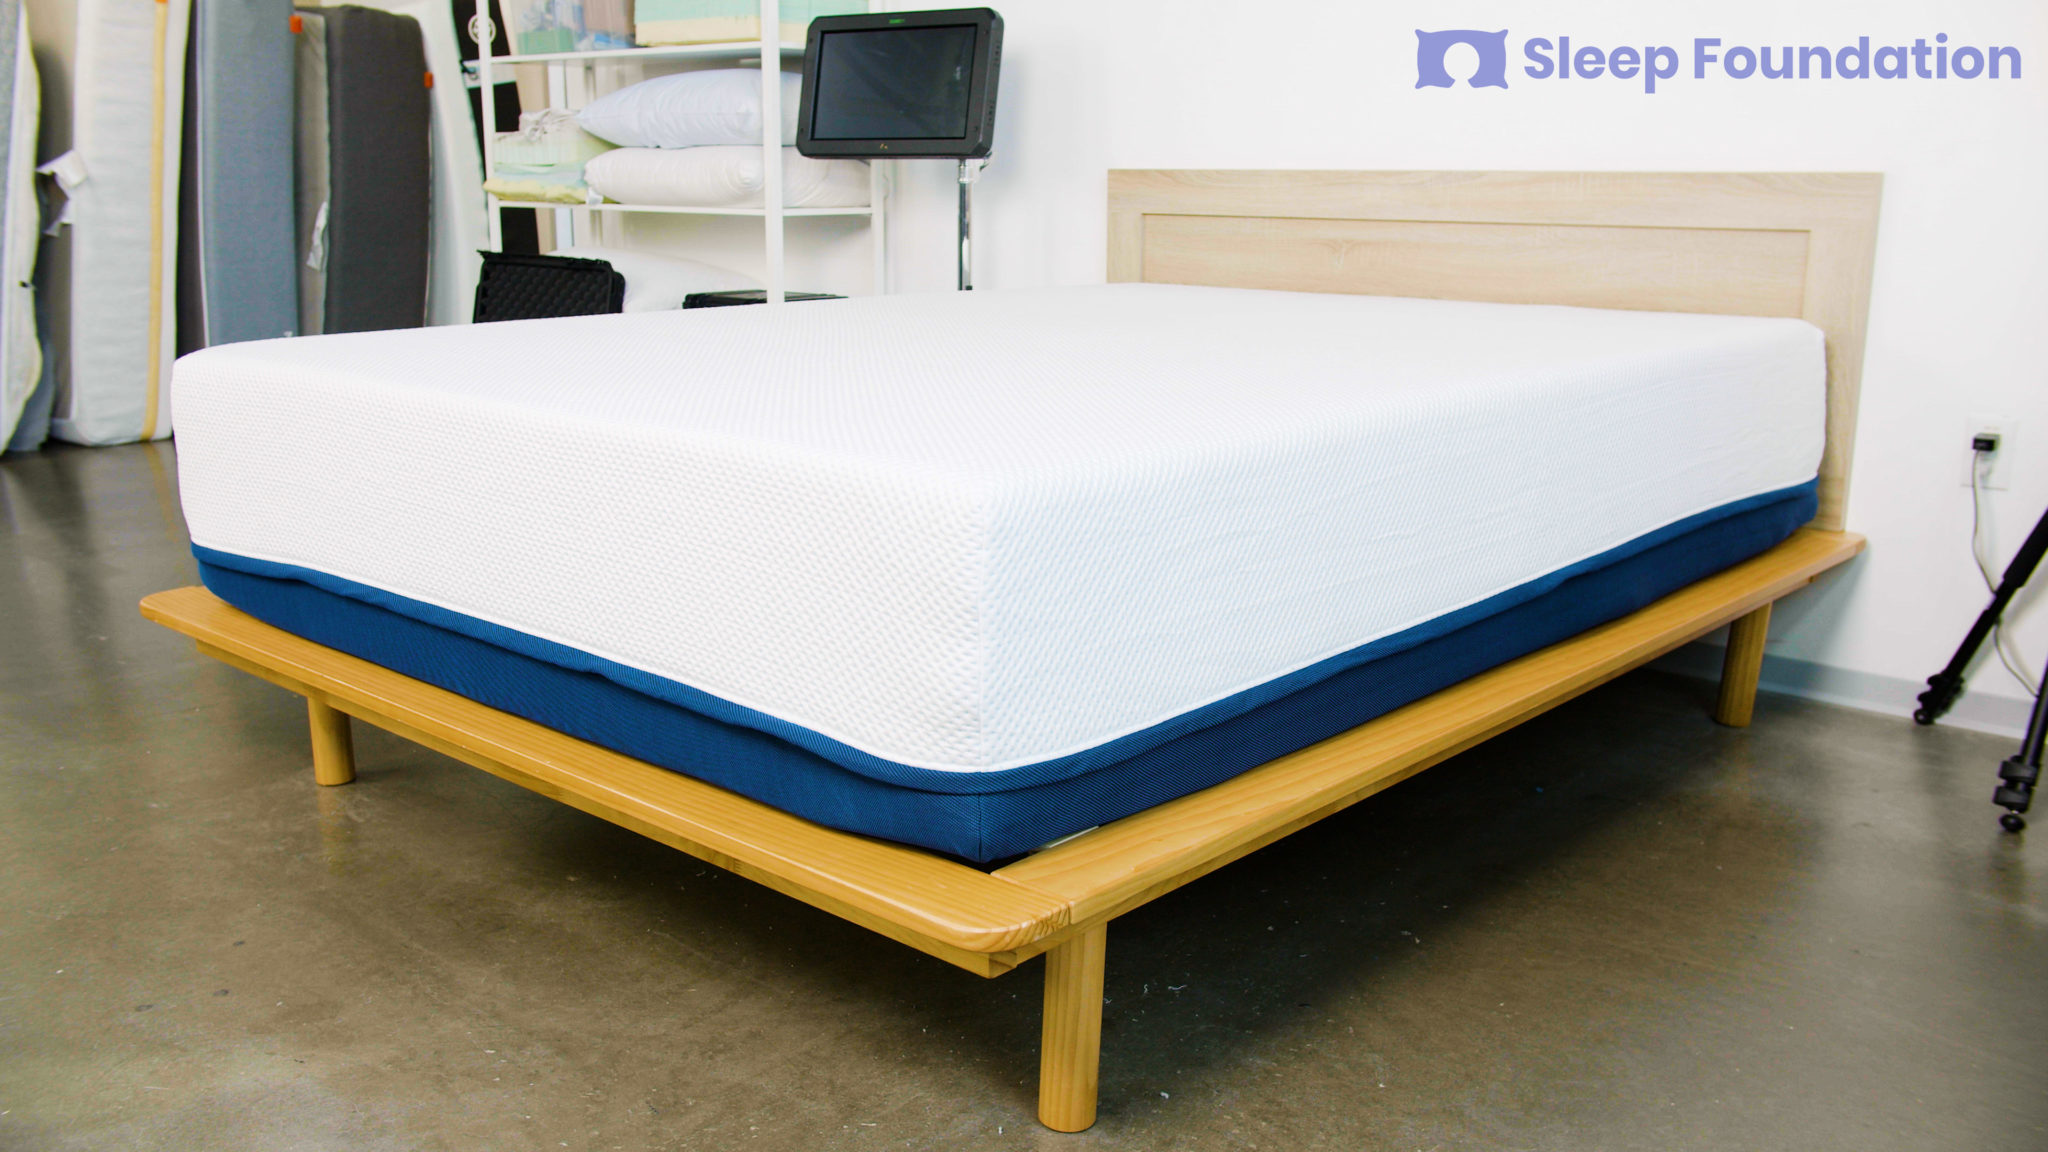 overstock dual plush firm mattress